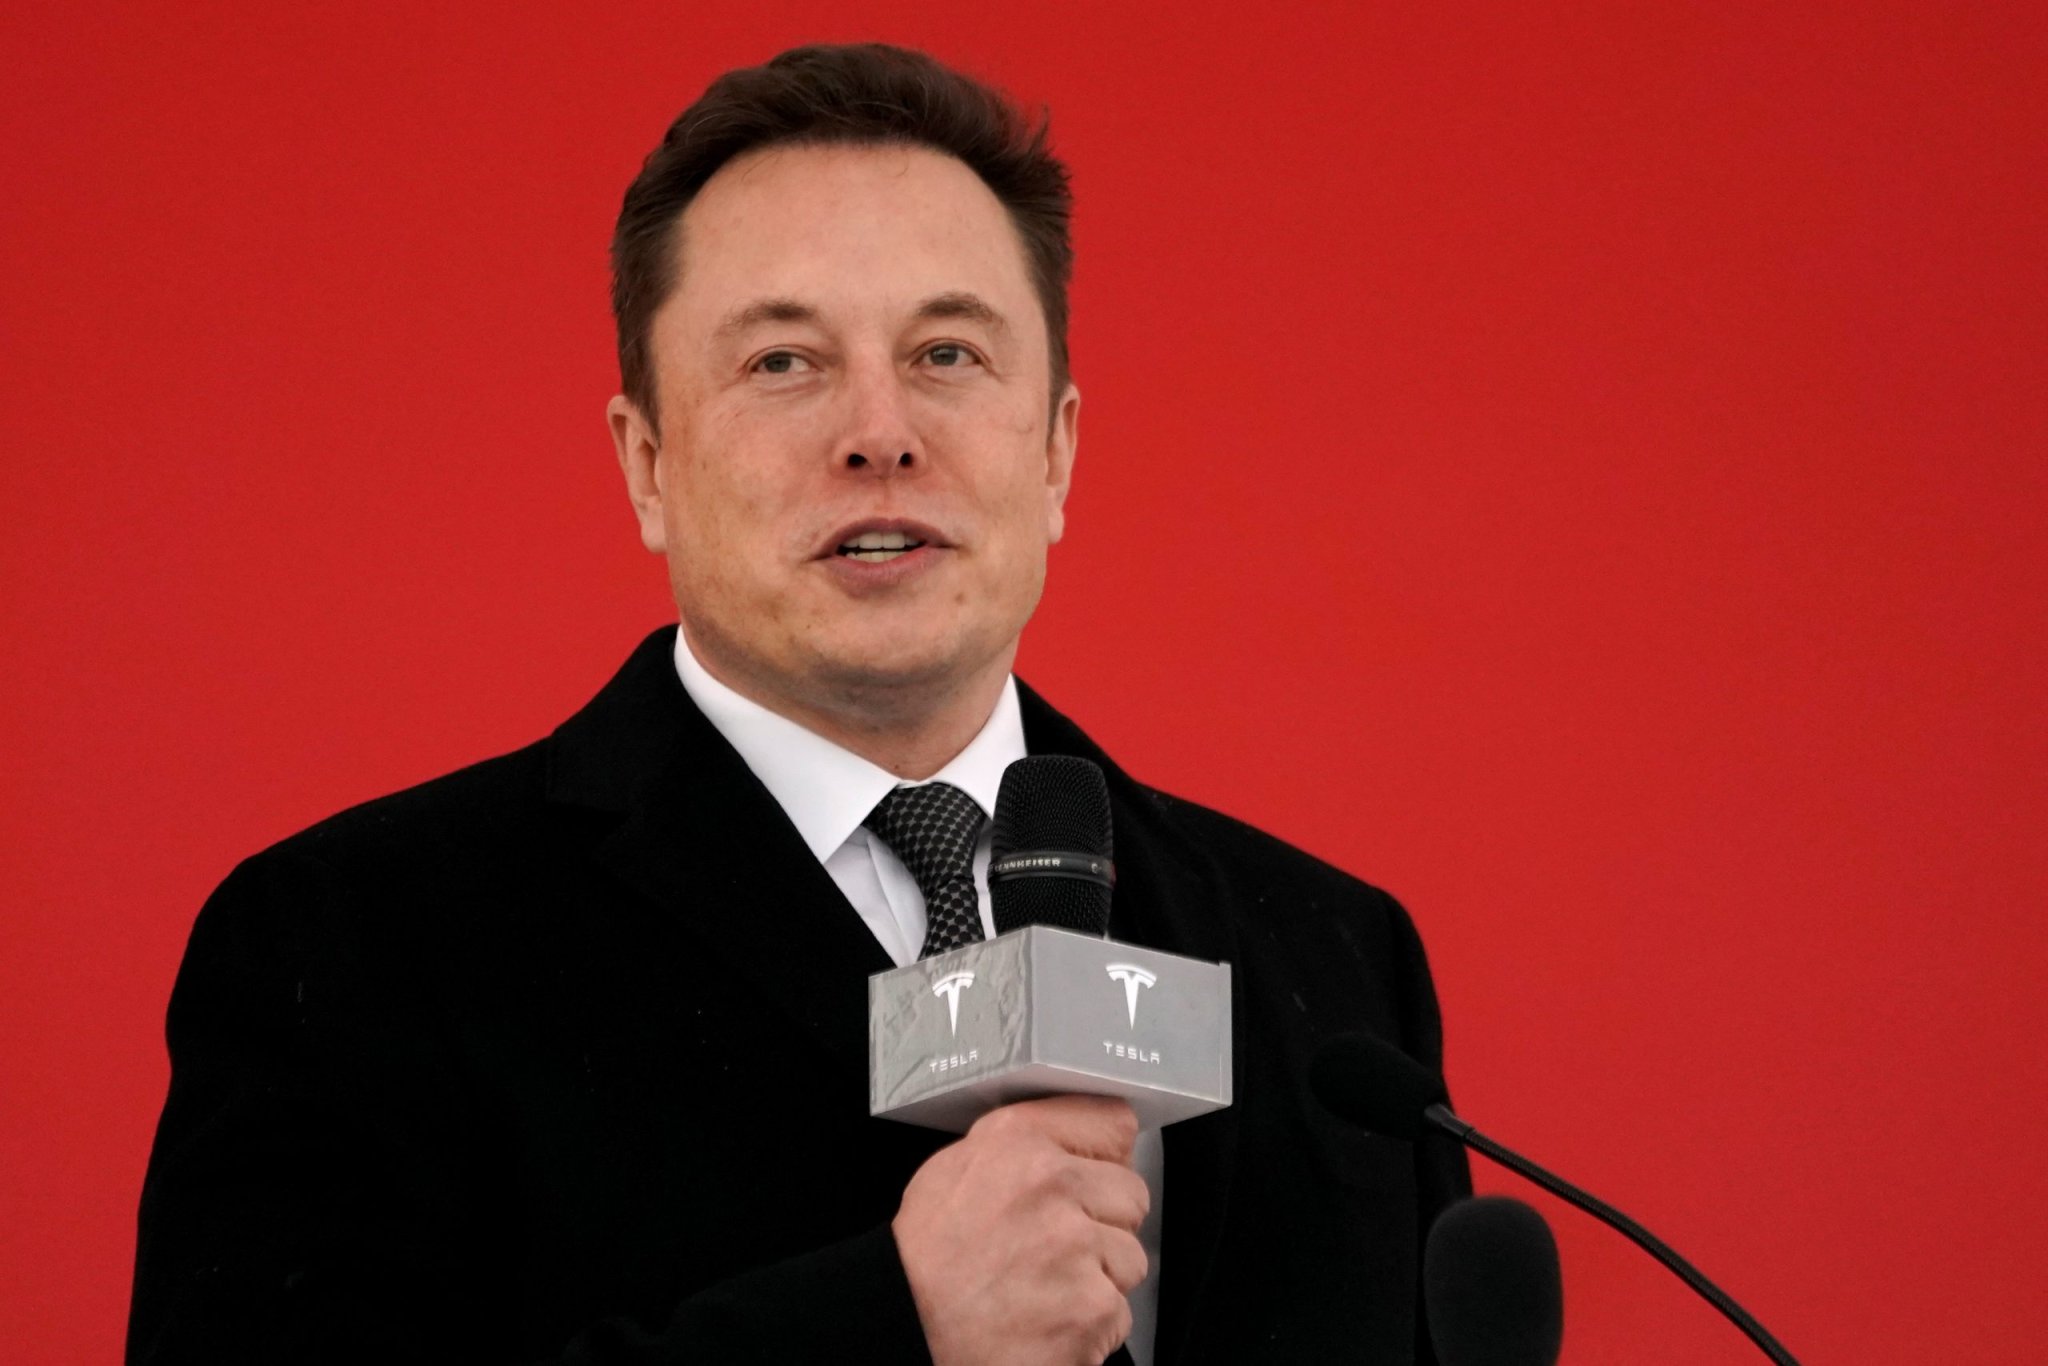 Spatenstich für Tesla-Fabrik: Elon Musk will nach Berlin kommen